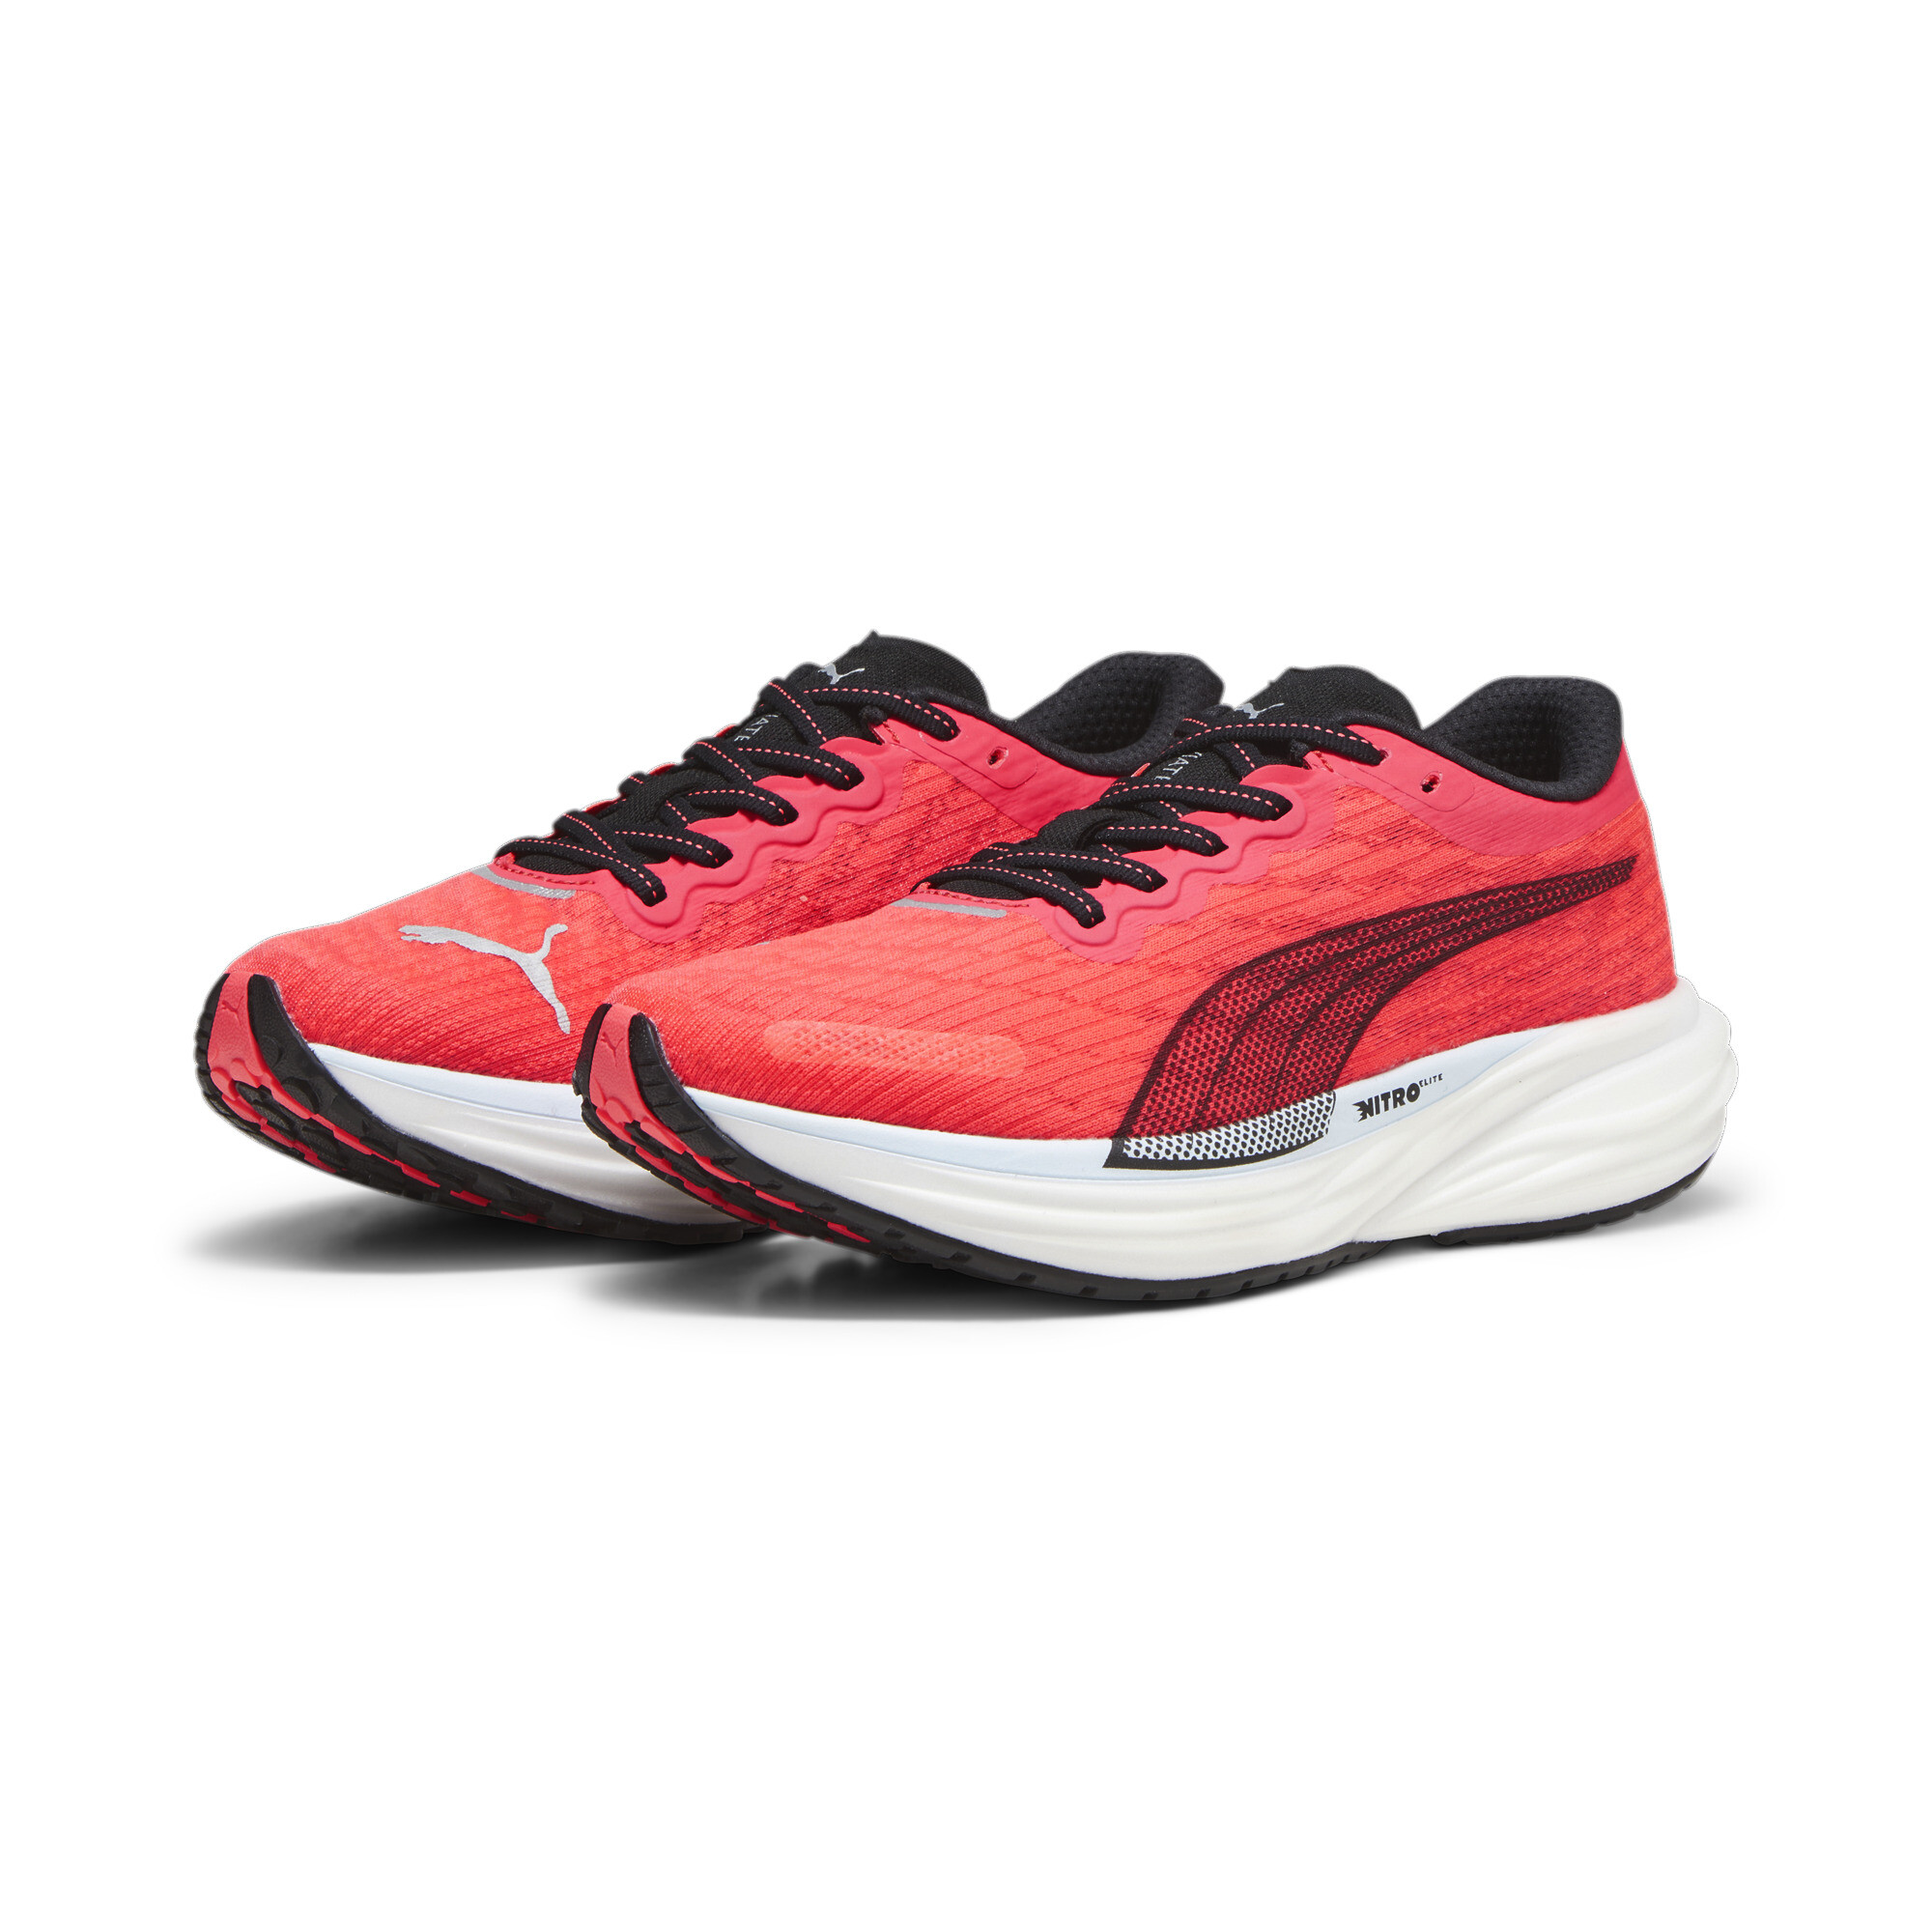 Women's PUMA Deviate NITROâ¢ 2 Running Shoes In Red, Size EU 40